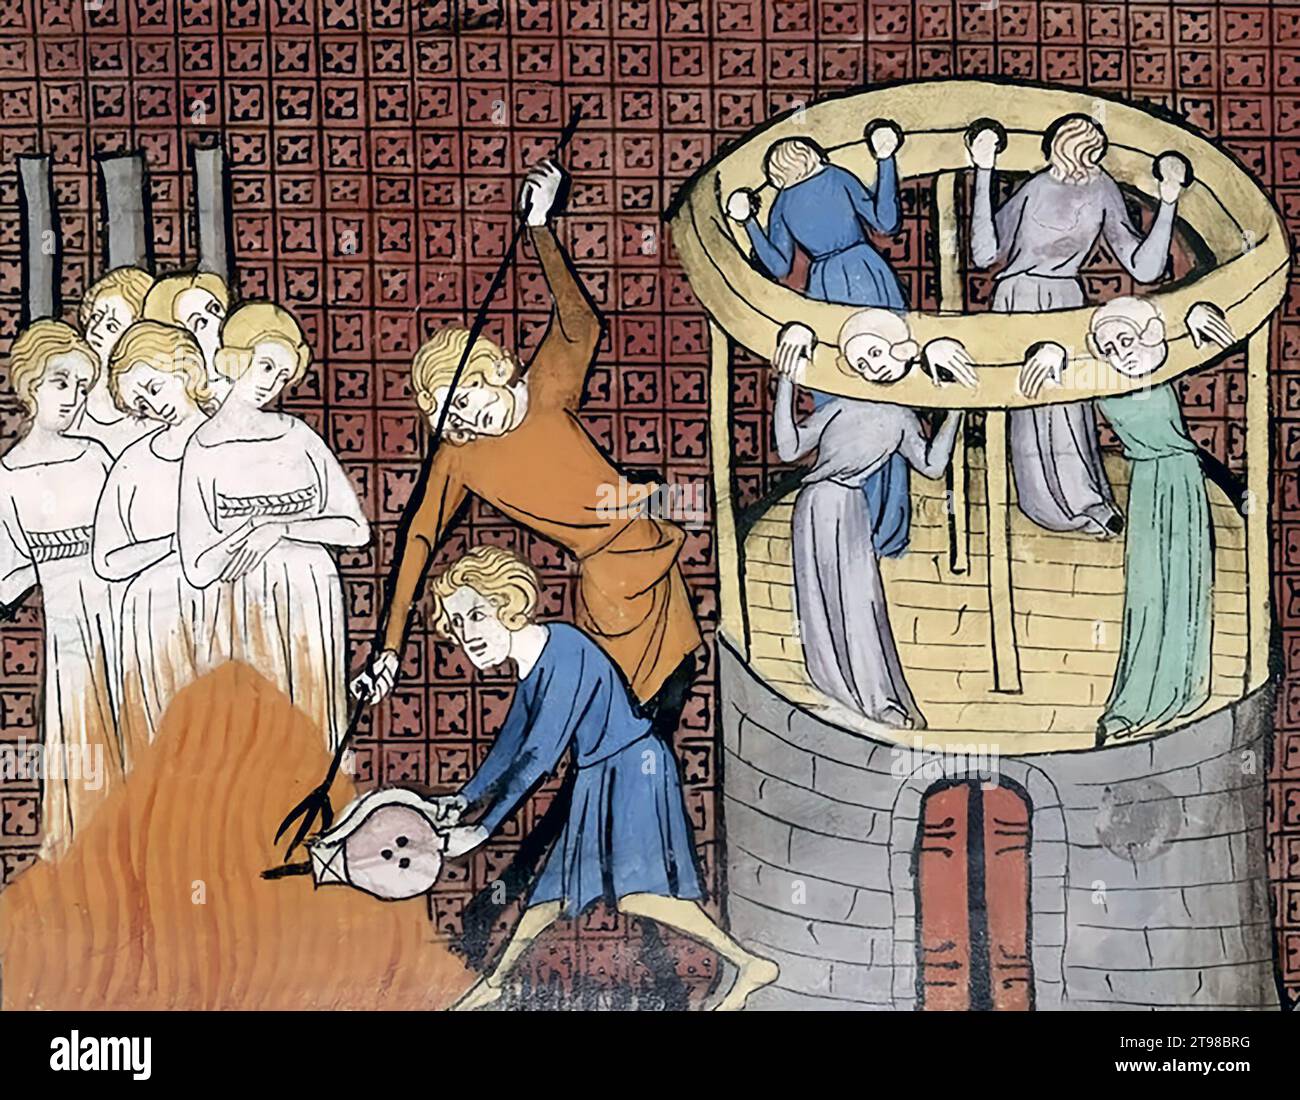 Brûlure de sorcière. Brûlant avec d'autres détenus en stock, illustration du 14e siècle Banque D'Images